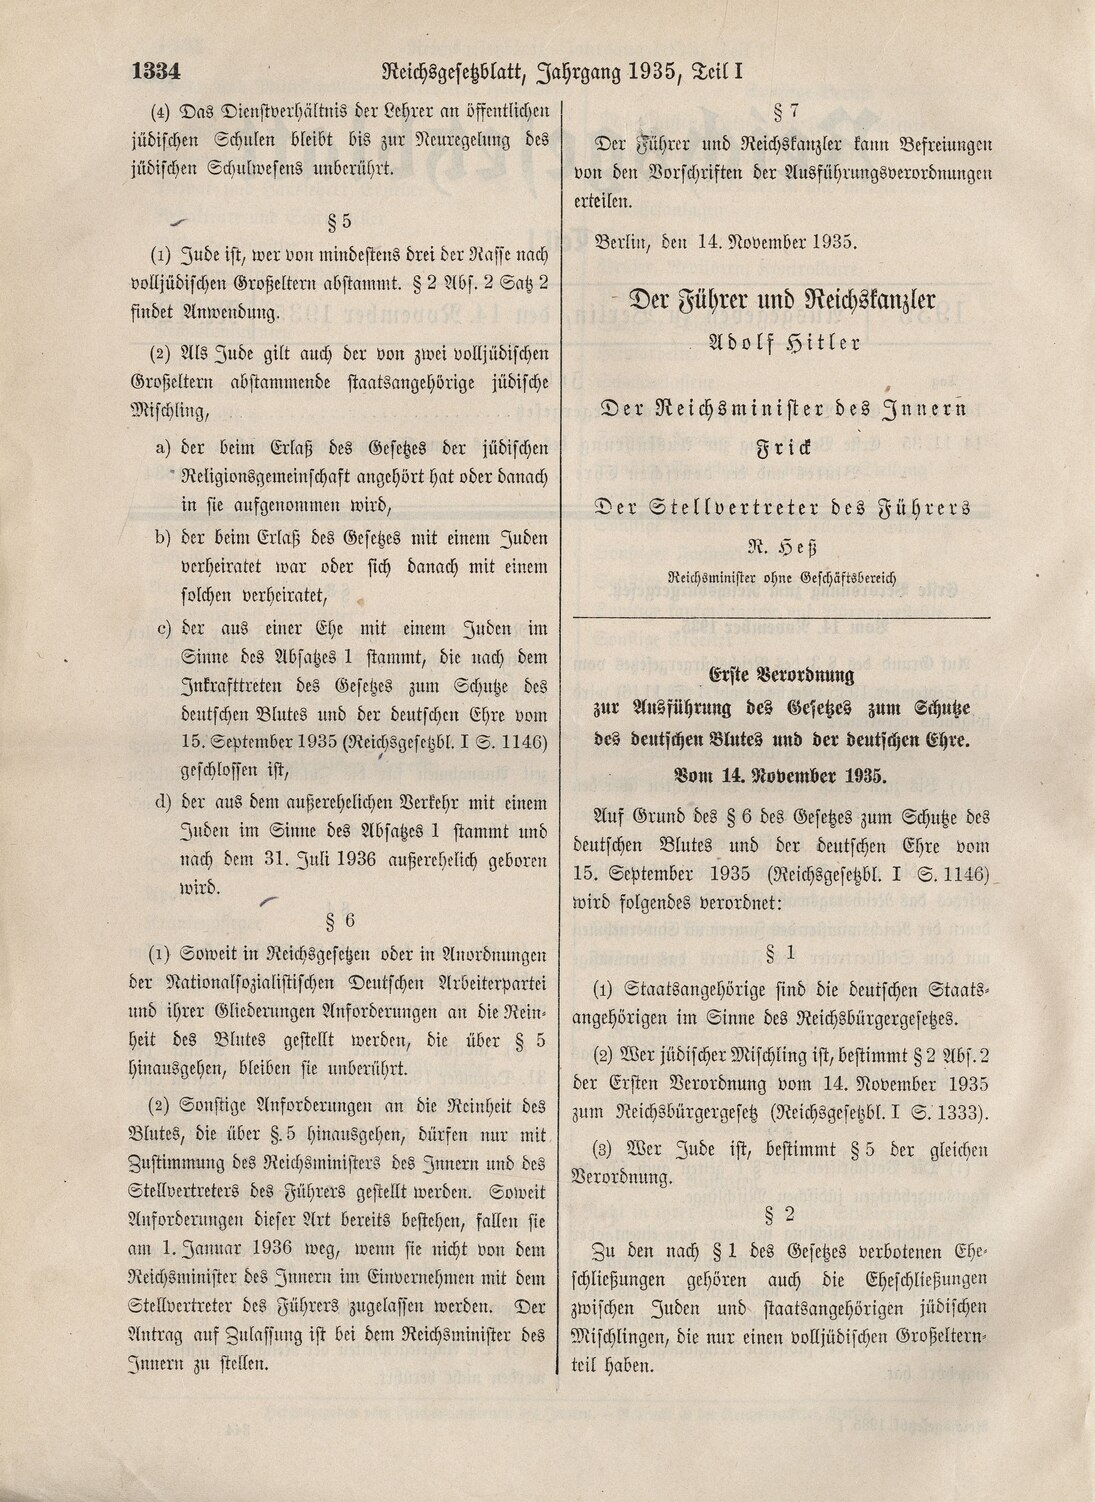 Reichsgesetzblatt Teil I, 1935, S. 1334.